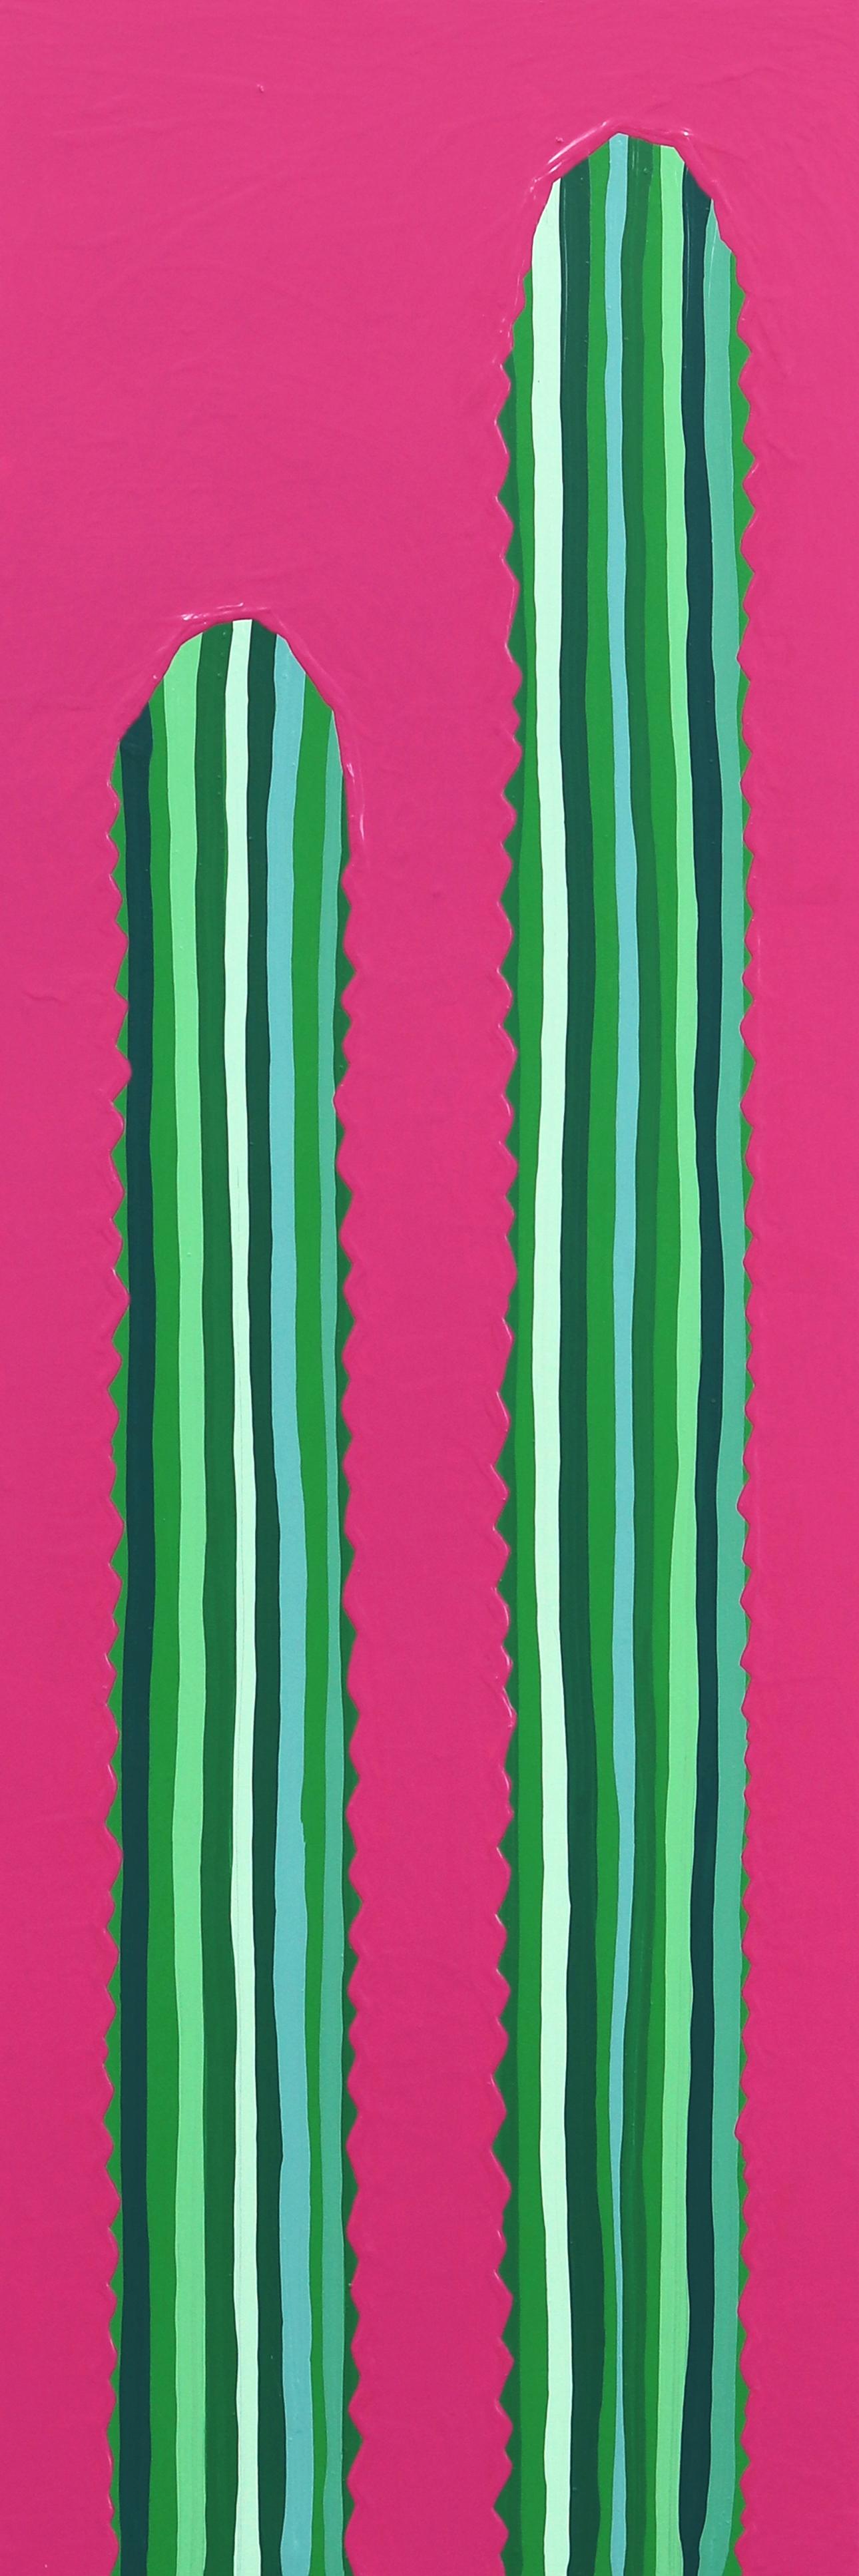 Rosa Picante - Peinture de cactus rose et verte vibrante d'inspiration Pop Art du Sud-Ouest